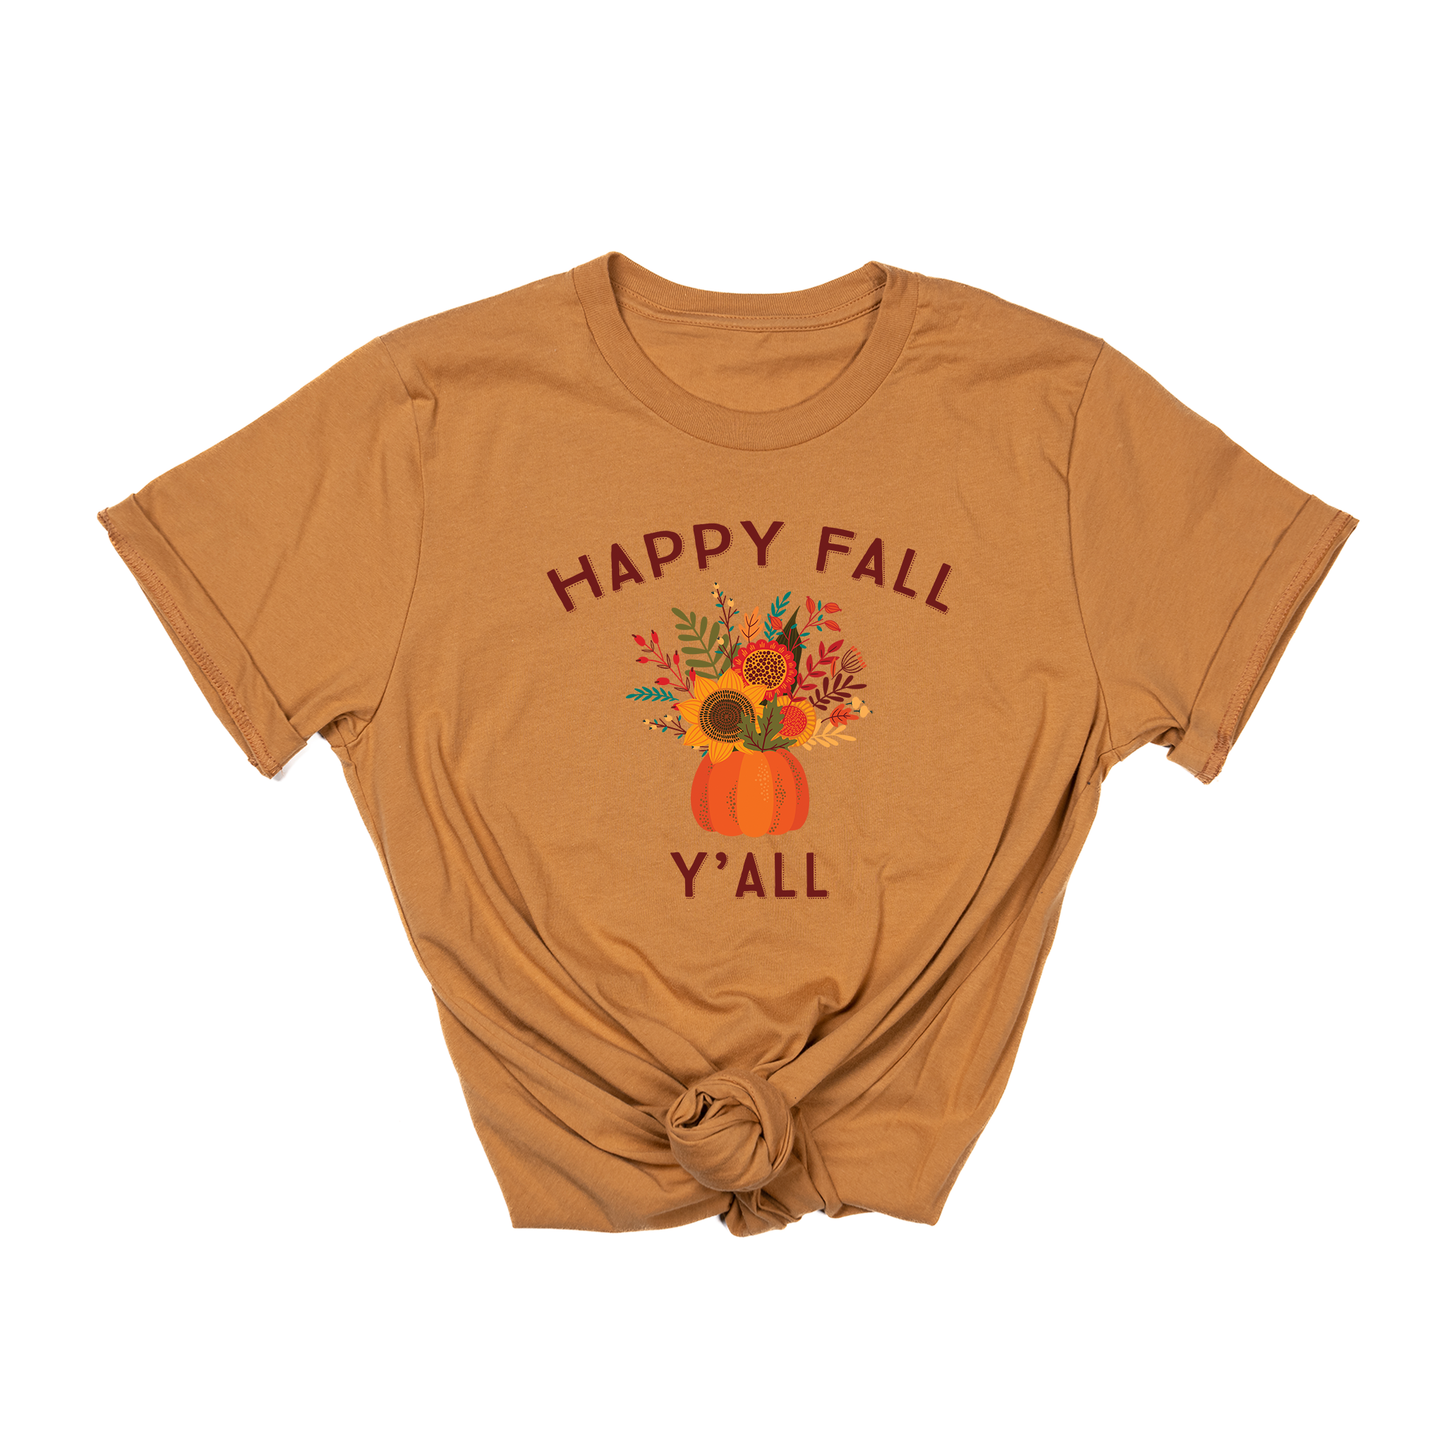 Happy Fall Y'all (Maroon) - Tee (Camel)